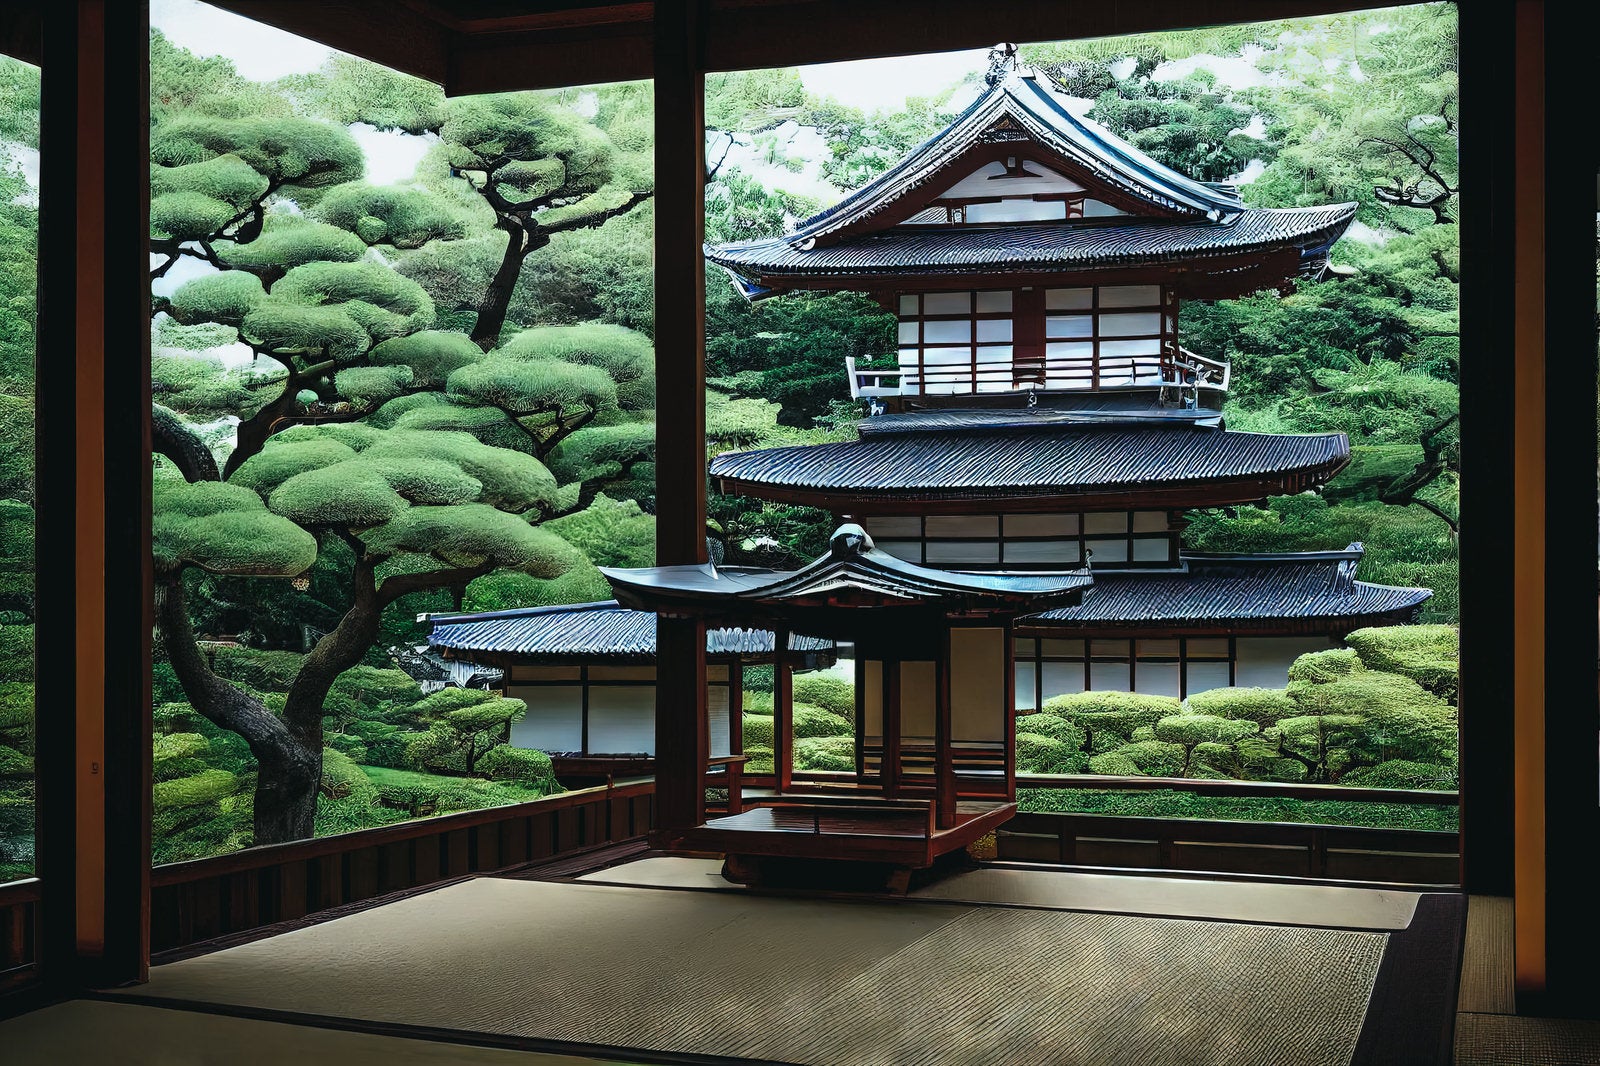 「庭園の松に囲まれる日本家屋」の写真